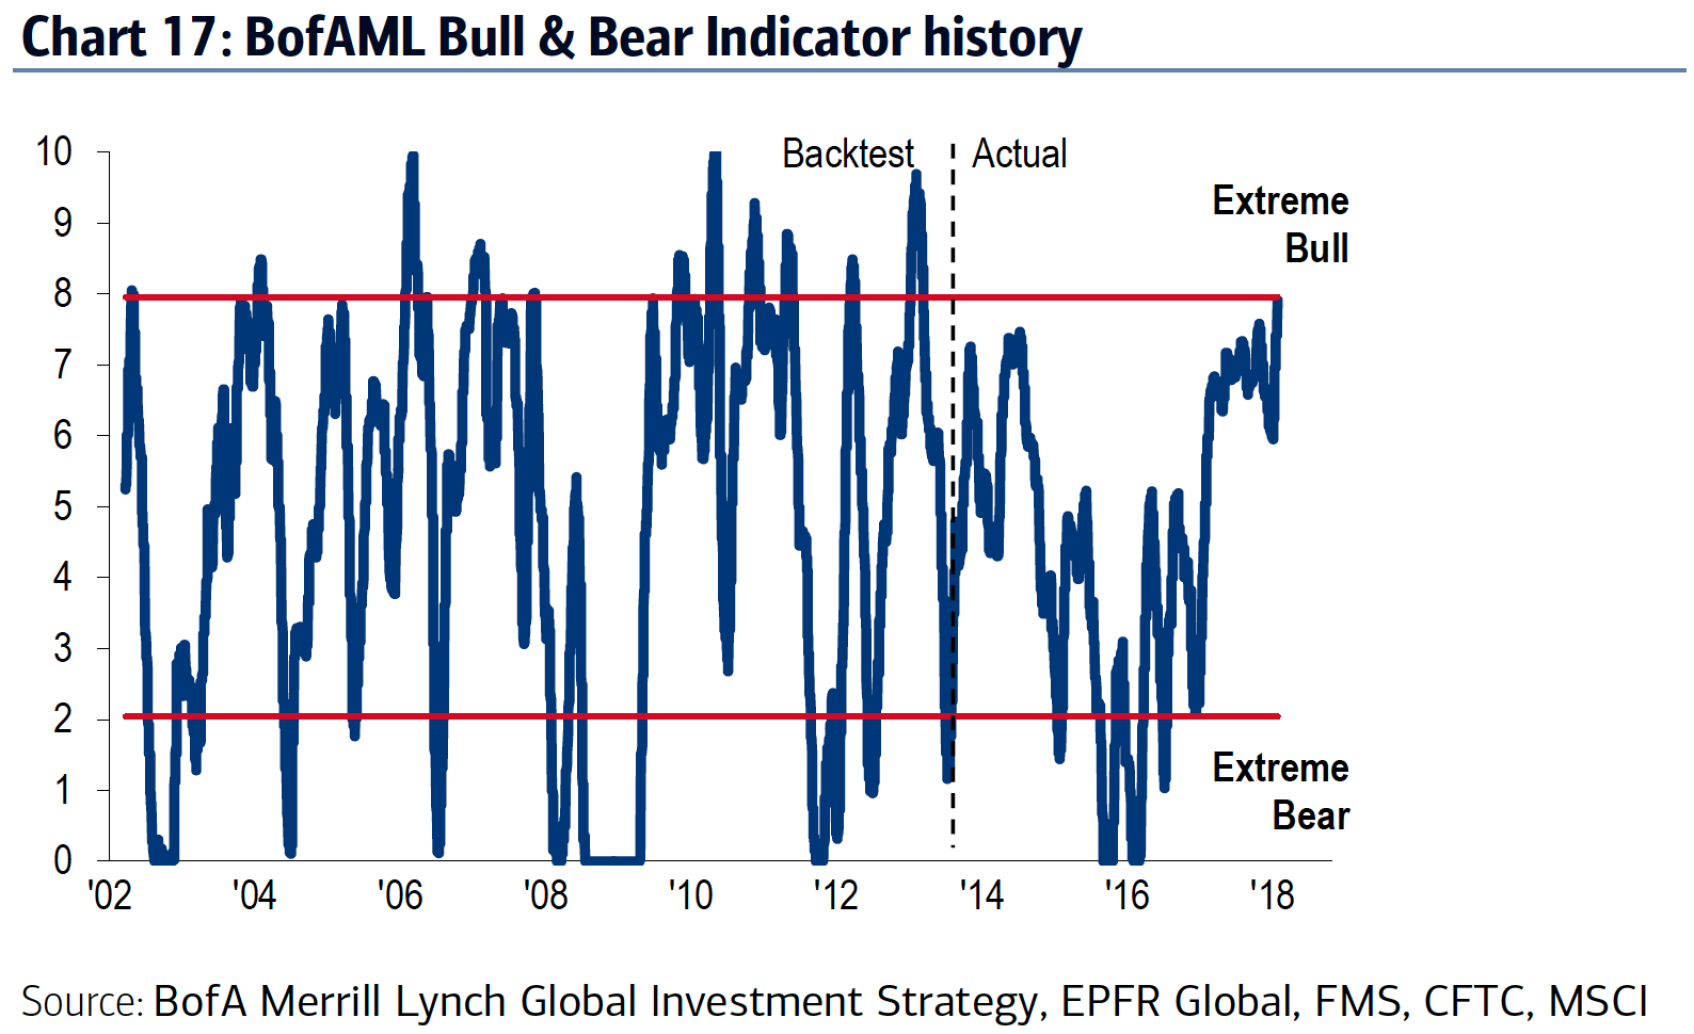 BofAML - Bull & Bear Indicator